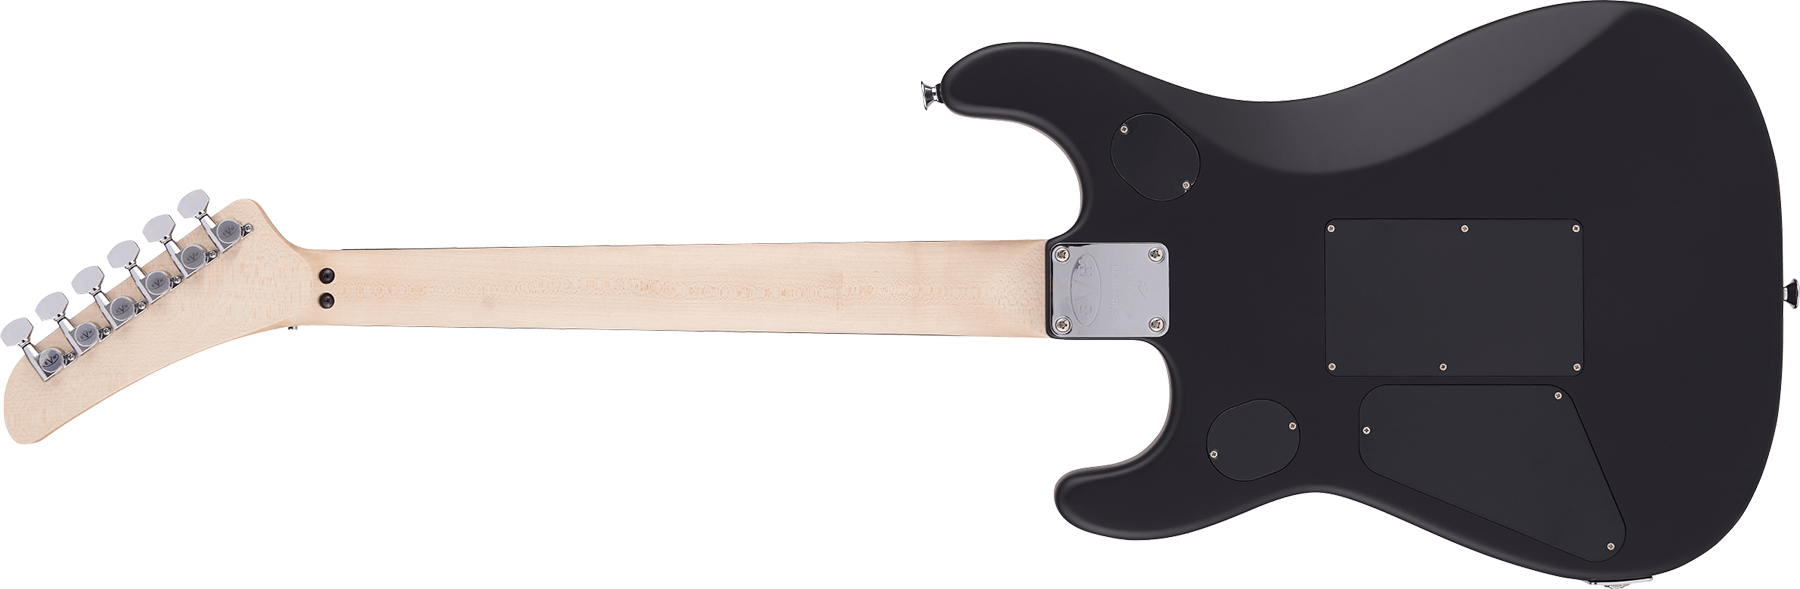 Evh 5150 Deluxe Poplar Burl Mex 2h Fr Eb - Black Burst - Guitarra eléctrica con forma de str. - Variation 1